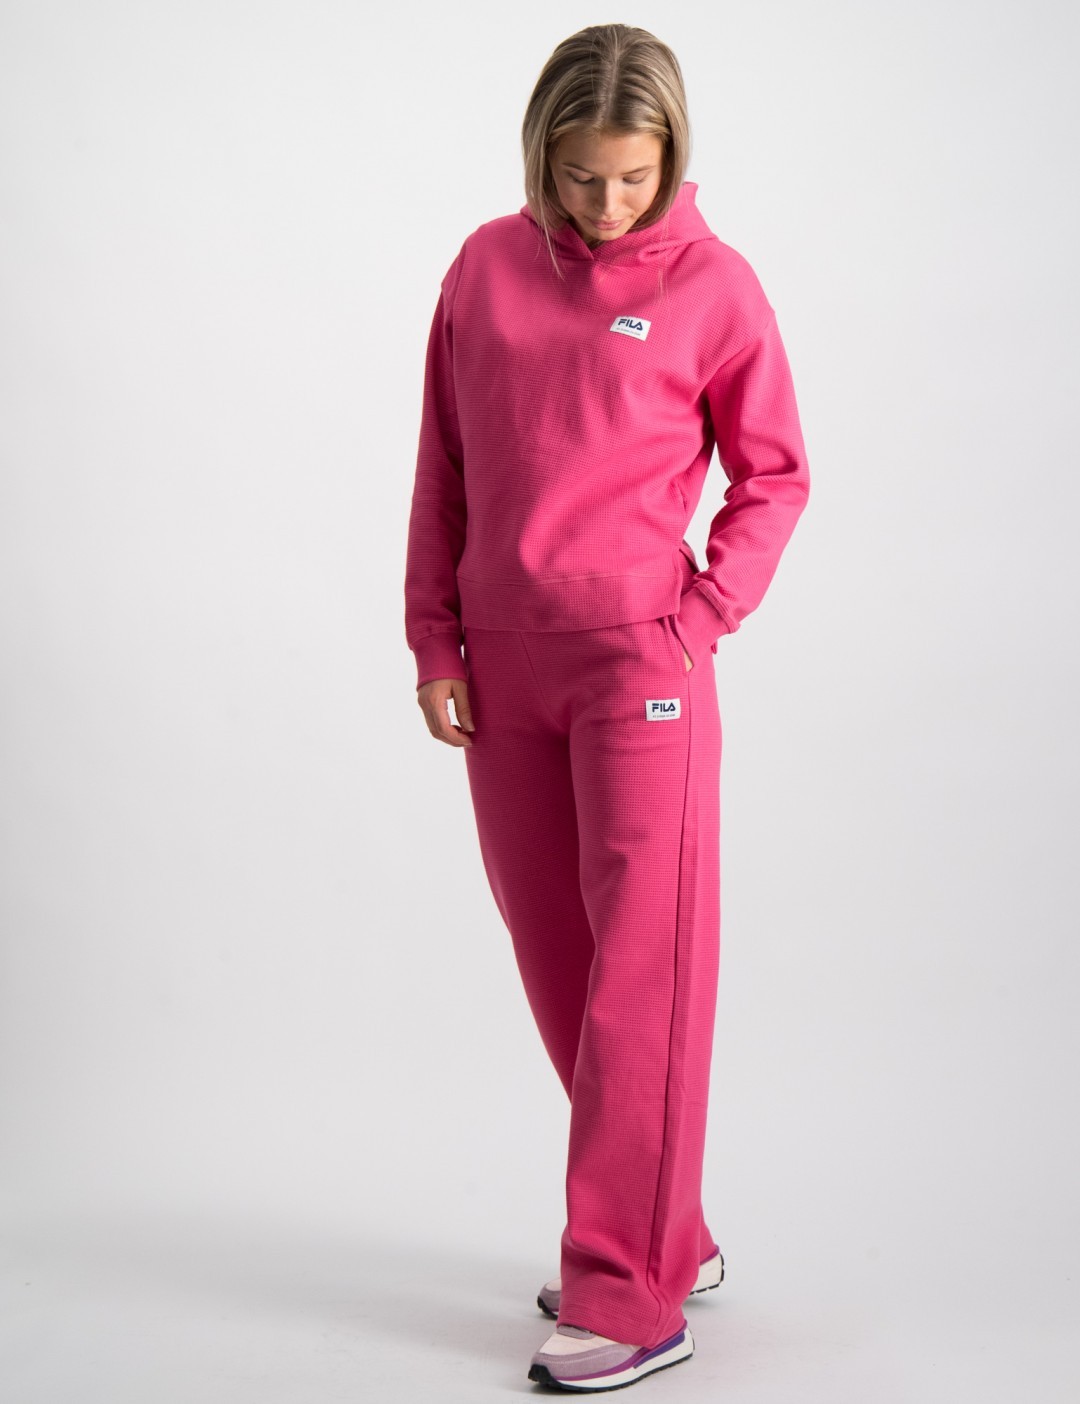 Perforatie Ontslag nemen Oppositie Roze TOECKSFORS culotte pants voor Meisjes | Kids Brand Store